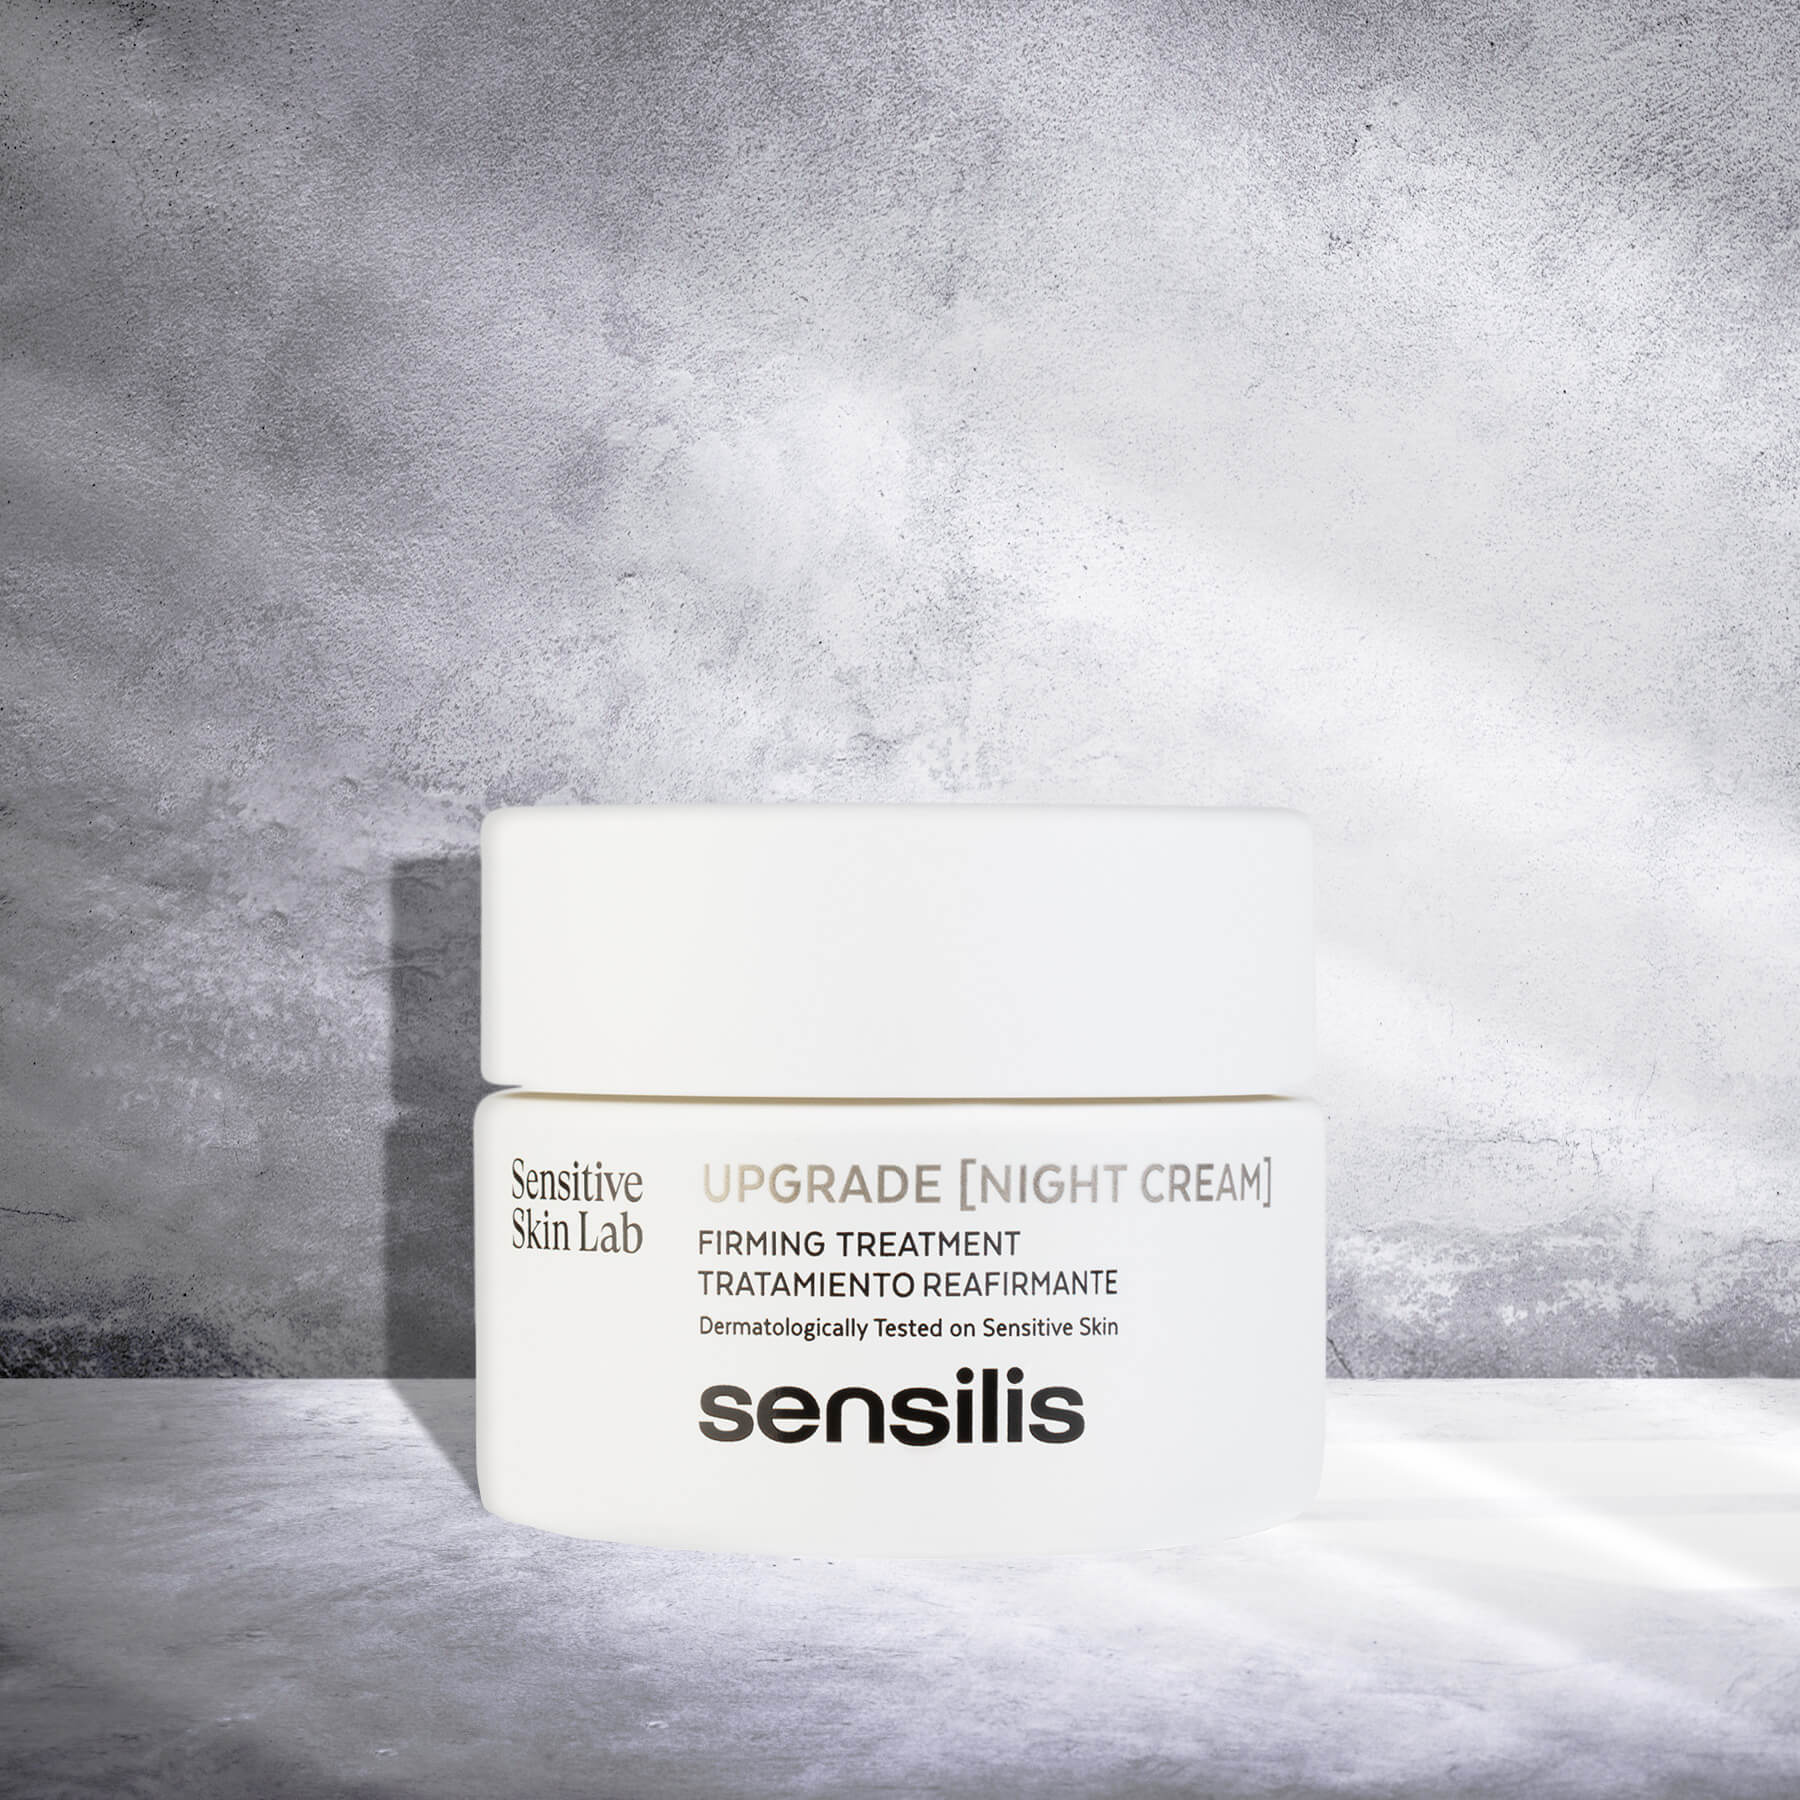 Sensilis Upgrade Crema Noche - Antiedad